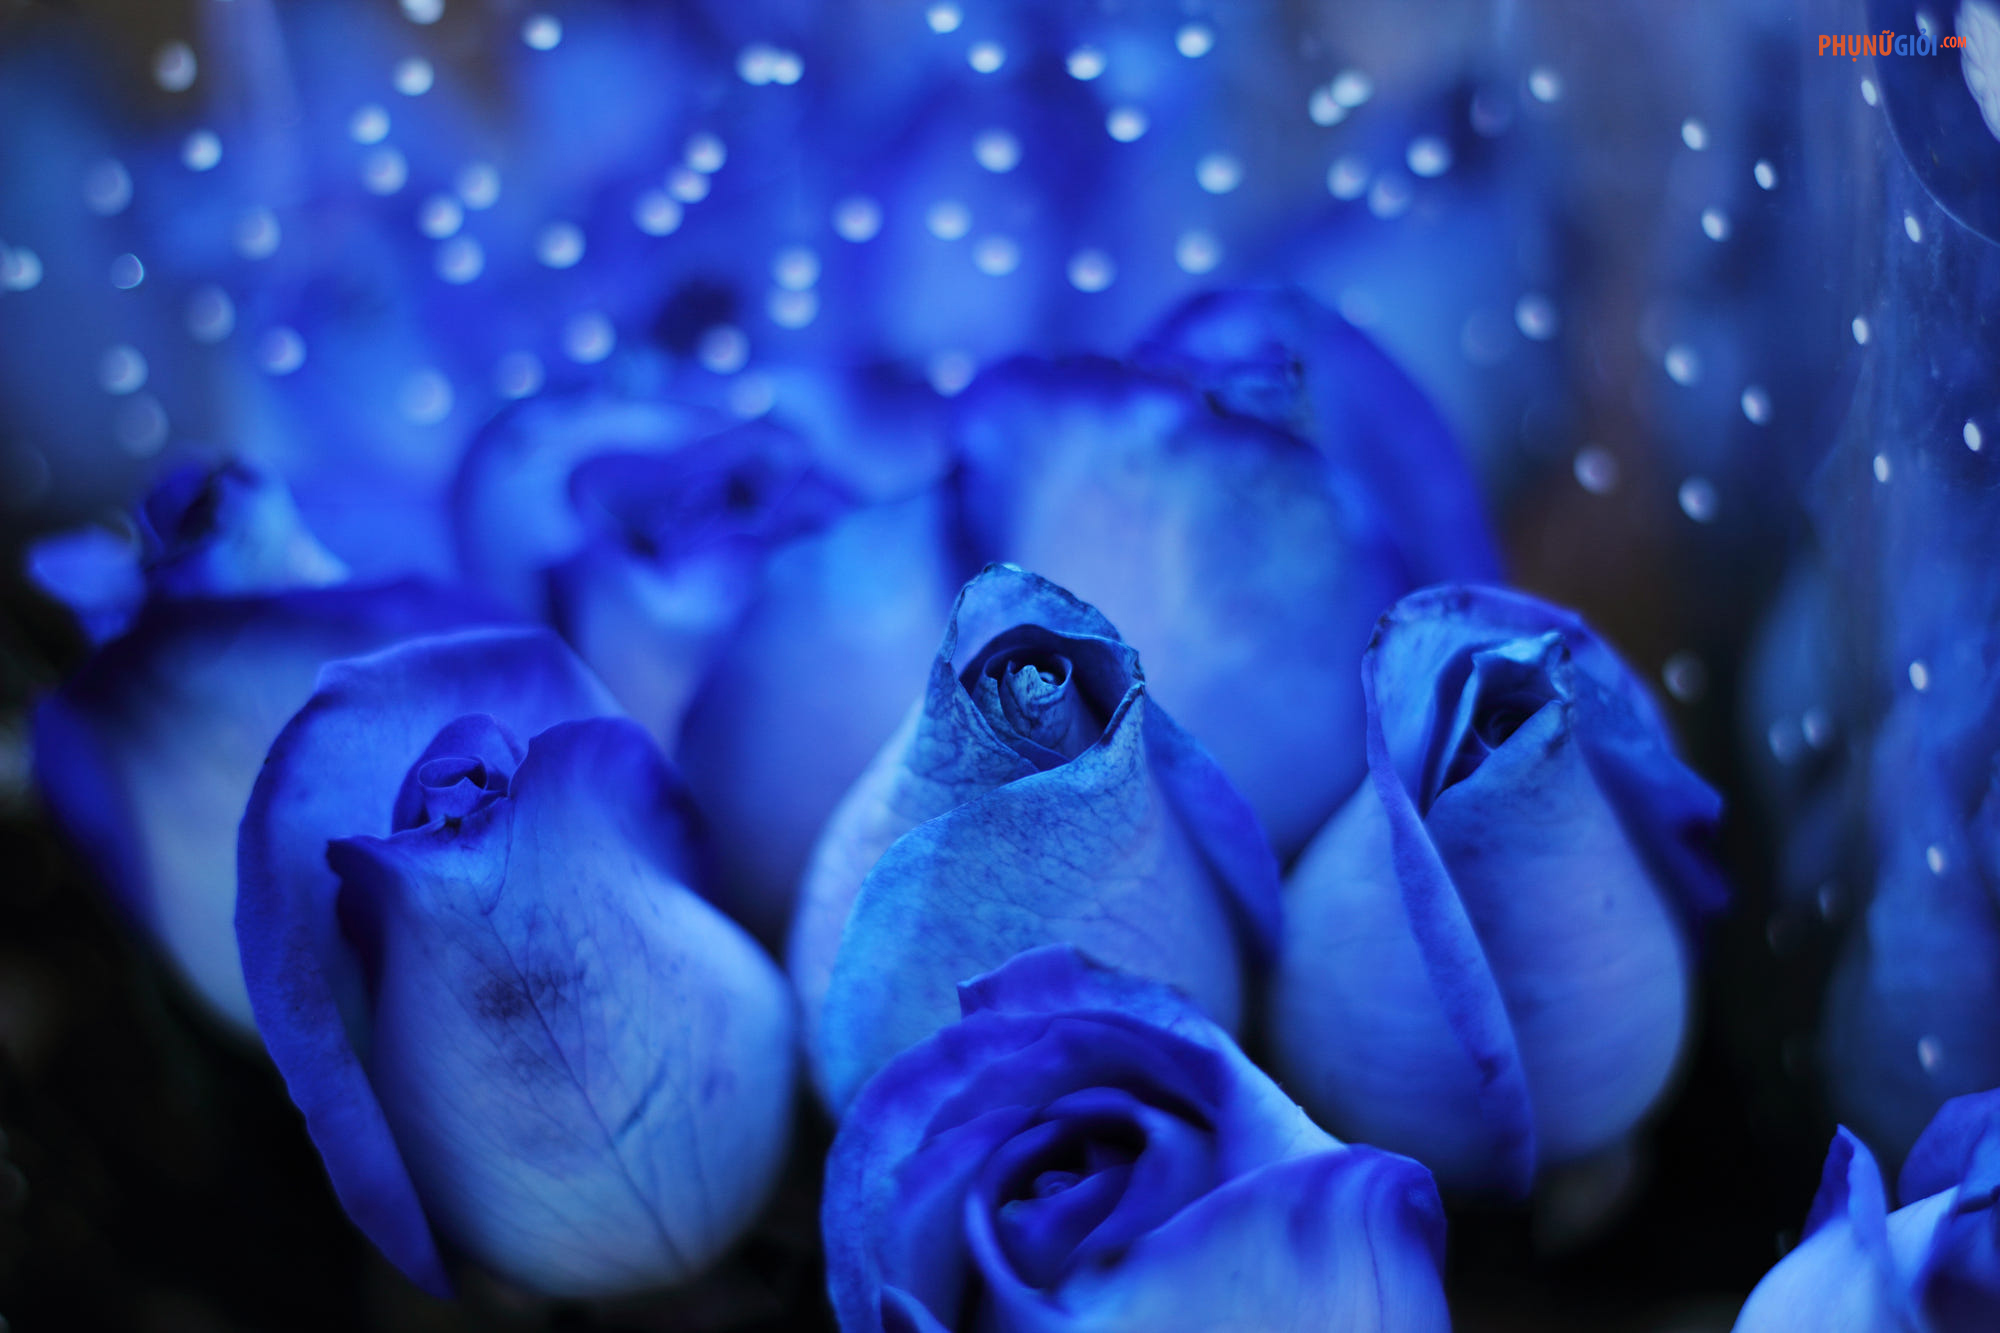 Ý nghĩa hoa hồng xanh sẽ khiến bạn cảm thấy bất ngờ khi biết được những điều tuyệt vời về những bông hoa này. Hãy ghé thăm để biết thêm về ý nghĩa của hoa hồng xanh và mang nó đến cho người mình yêu thương.